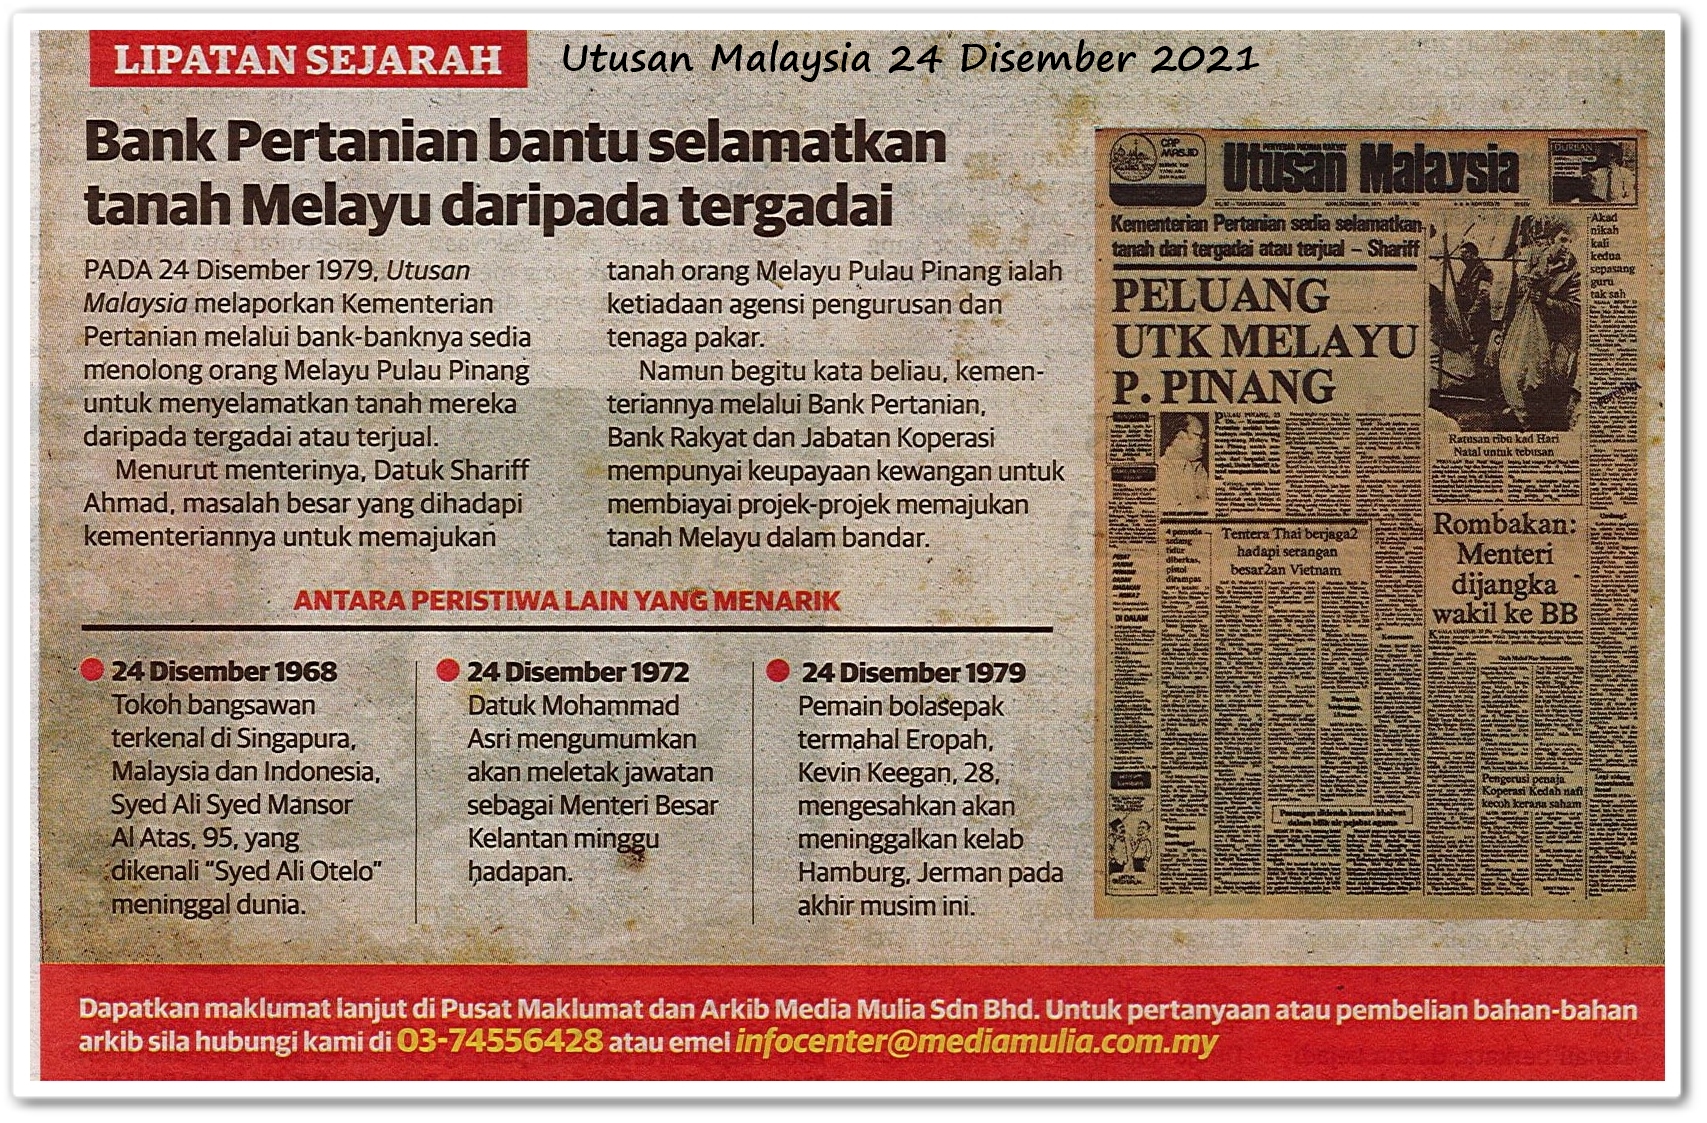 Lipatan sejarah 24 Disember - Keratan akhbar Utusan Malaysia 24 Disember 2021